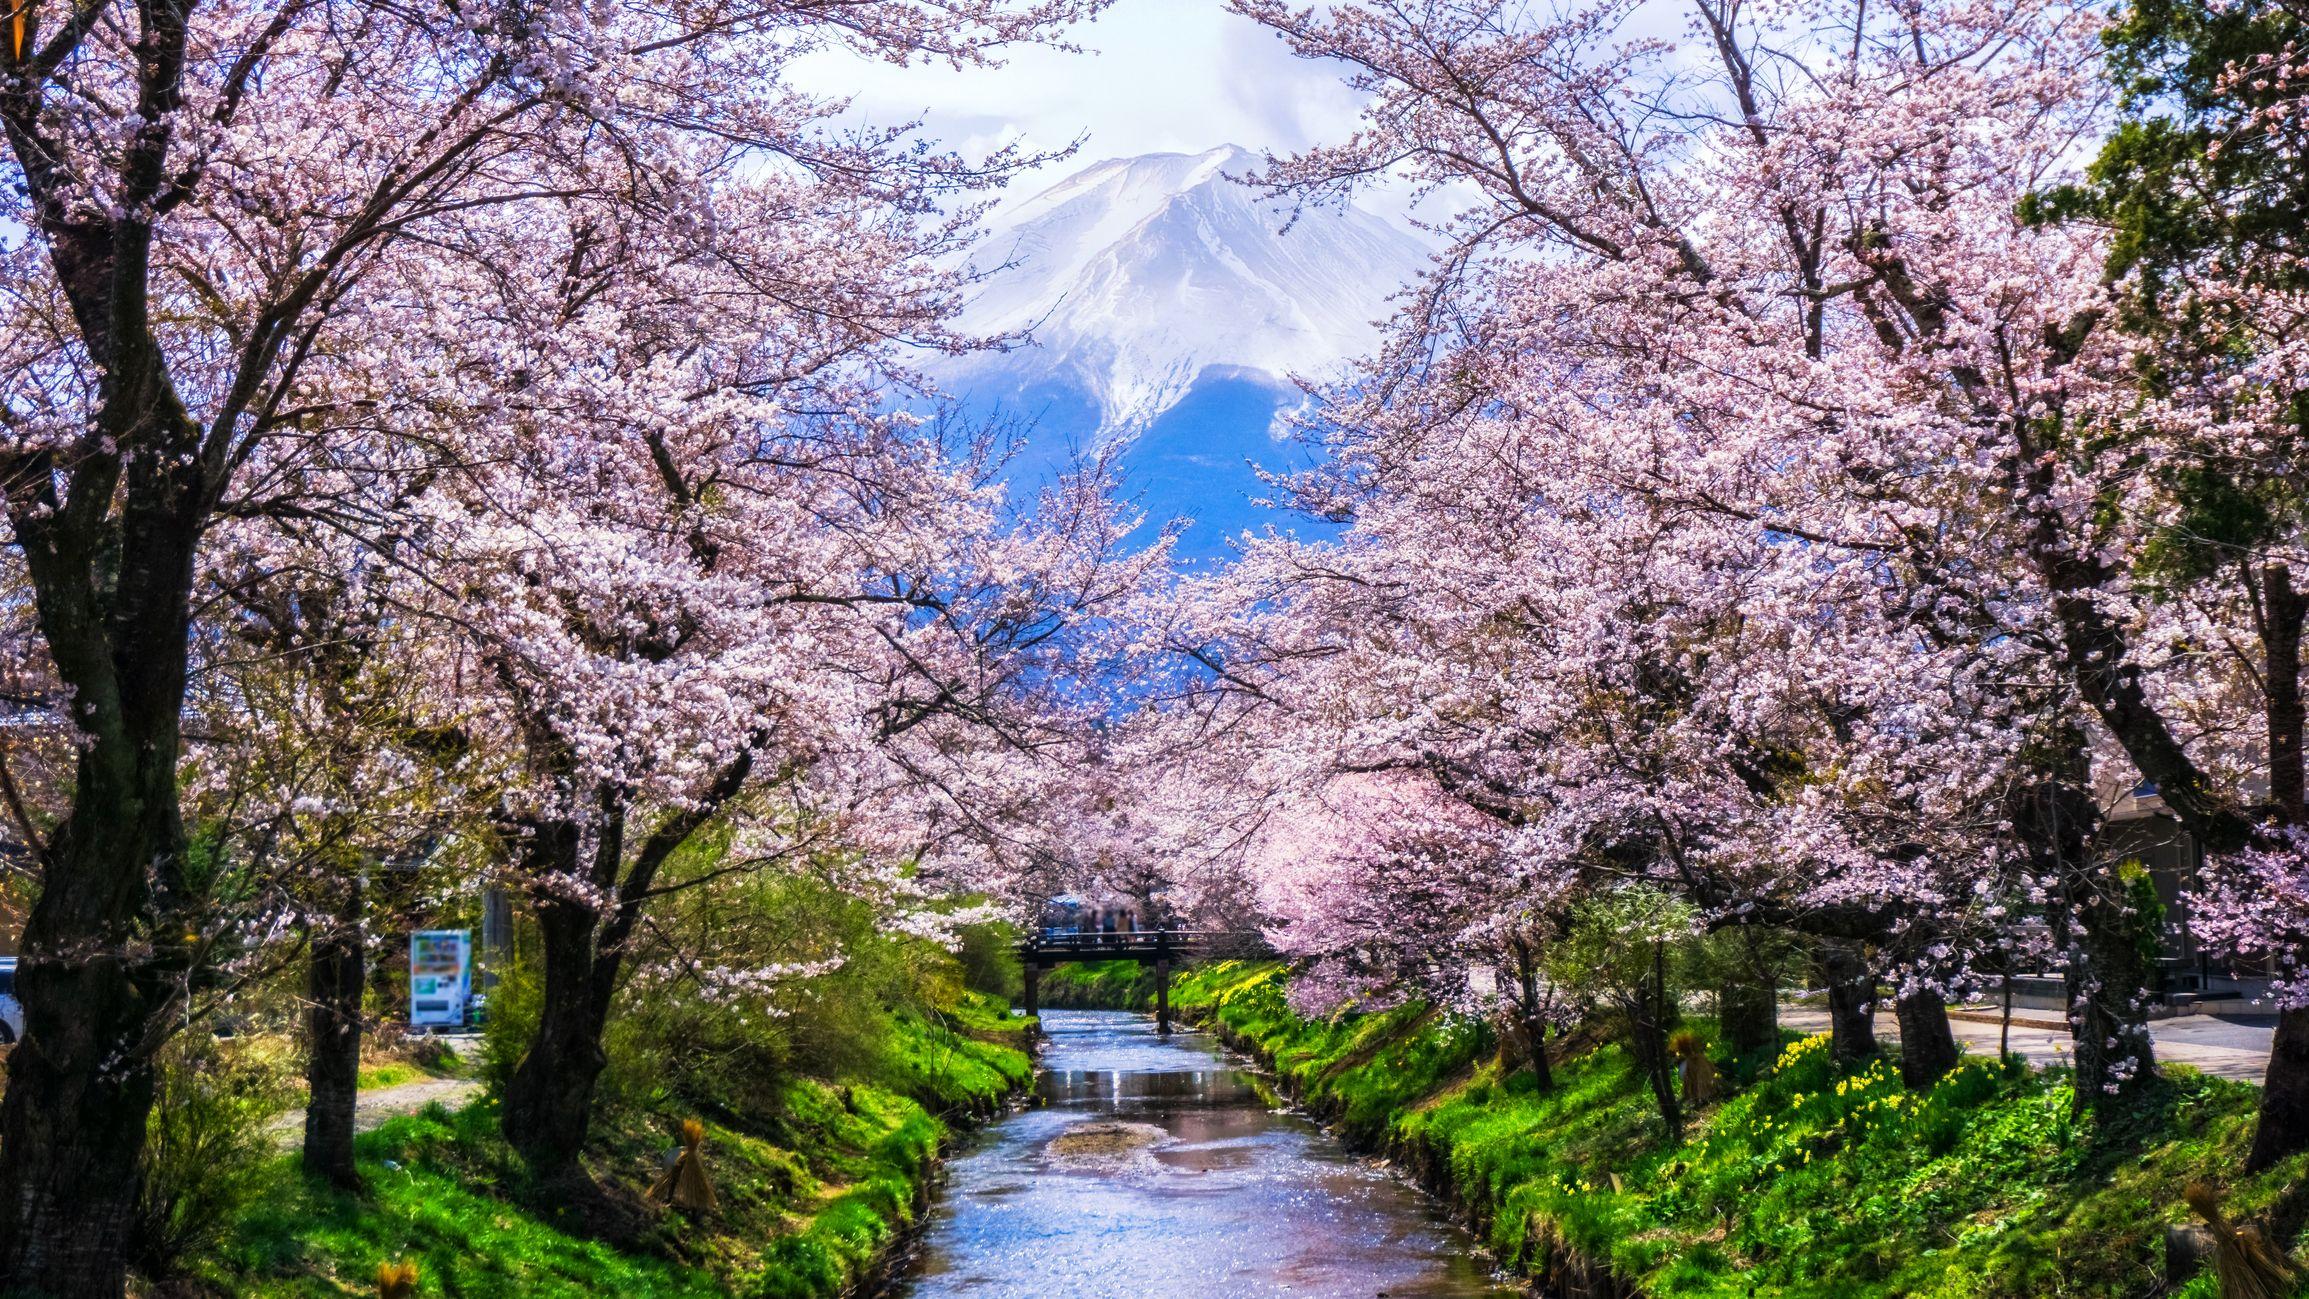 Japanese Sakura Trees Wallpapers - Top Free Japanese Sakura Trees